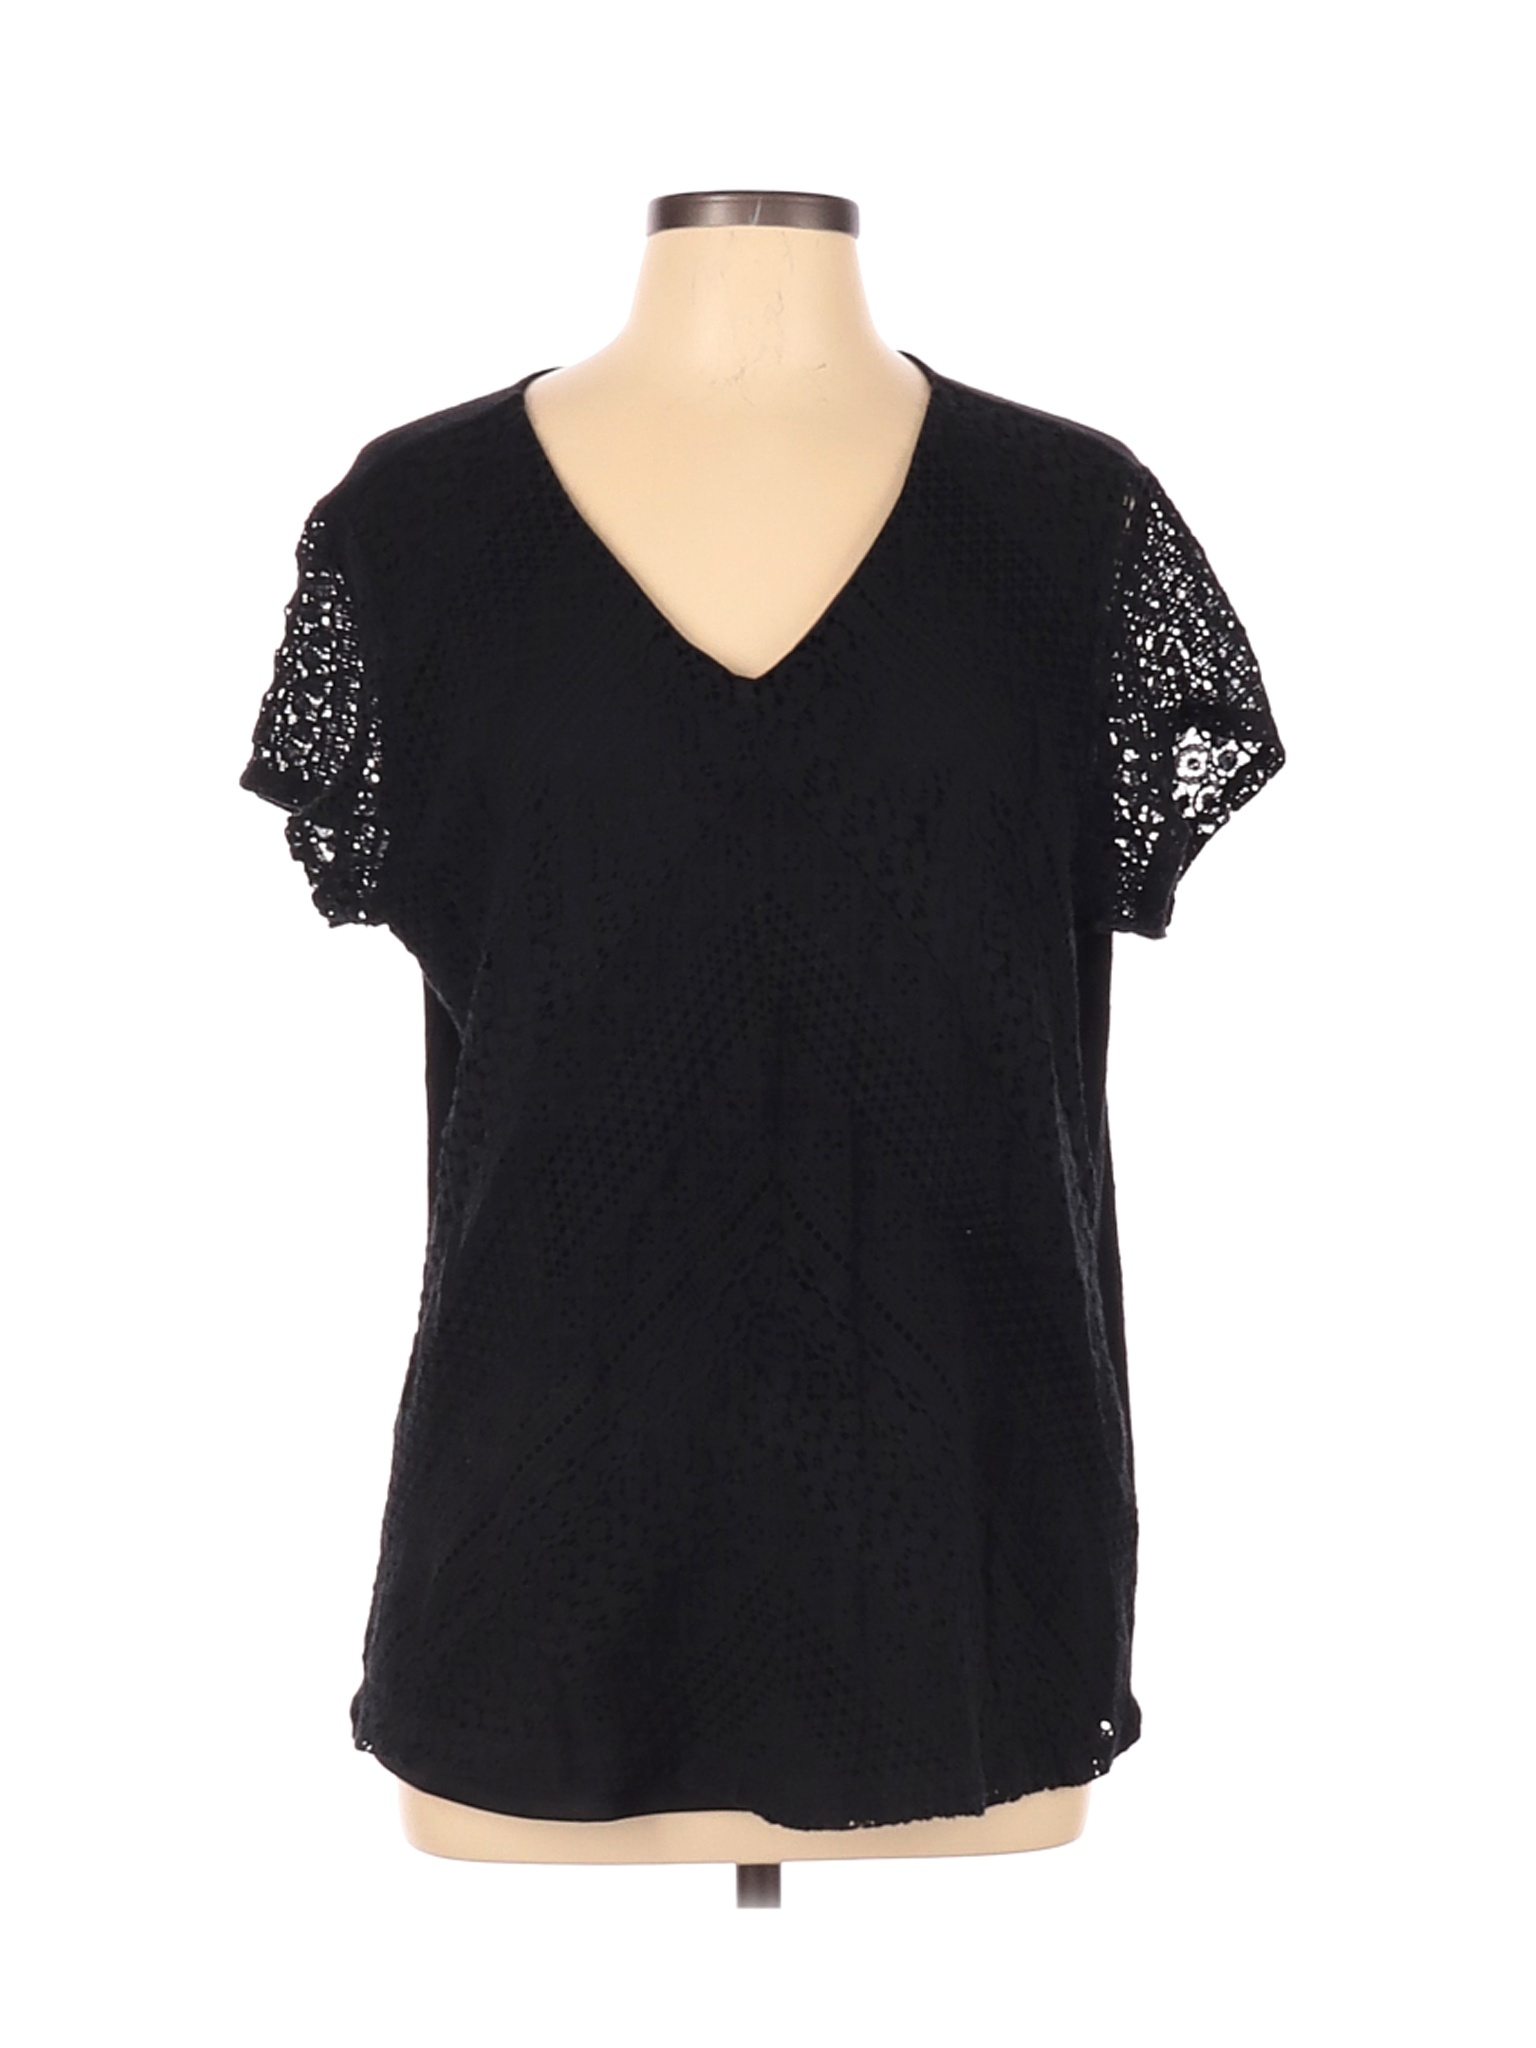 Christopher & Banks Women Black Short Sleeve Blouse XL | eBay